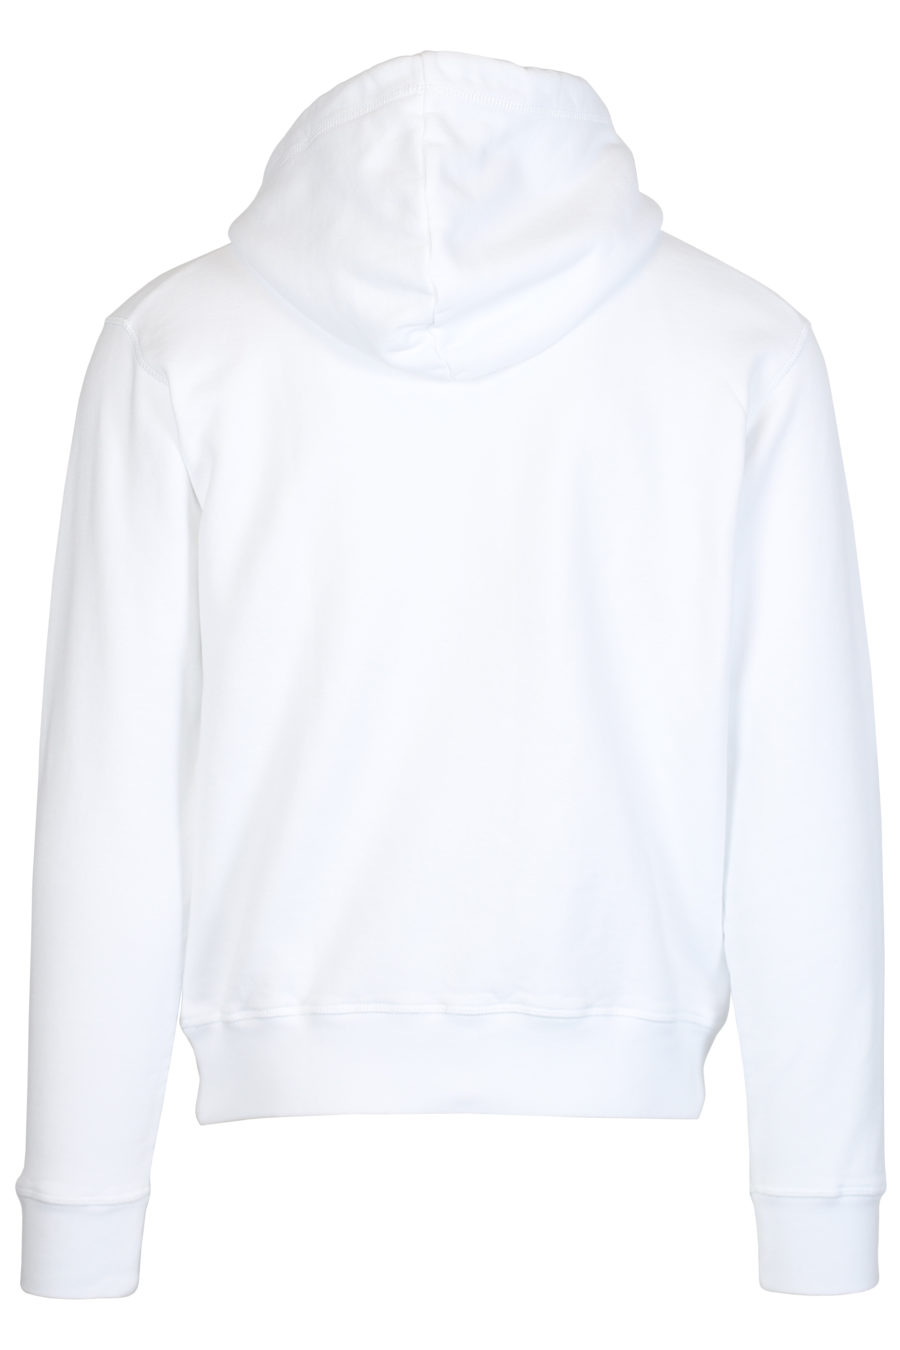 Sudadera blanca con capucha y logo "Icon Spray" - IMG 2467